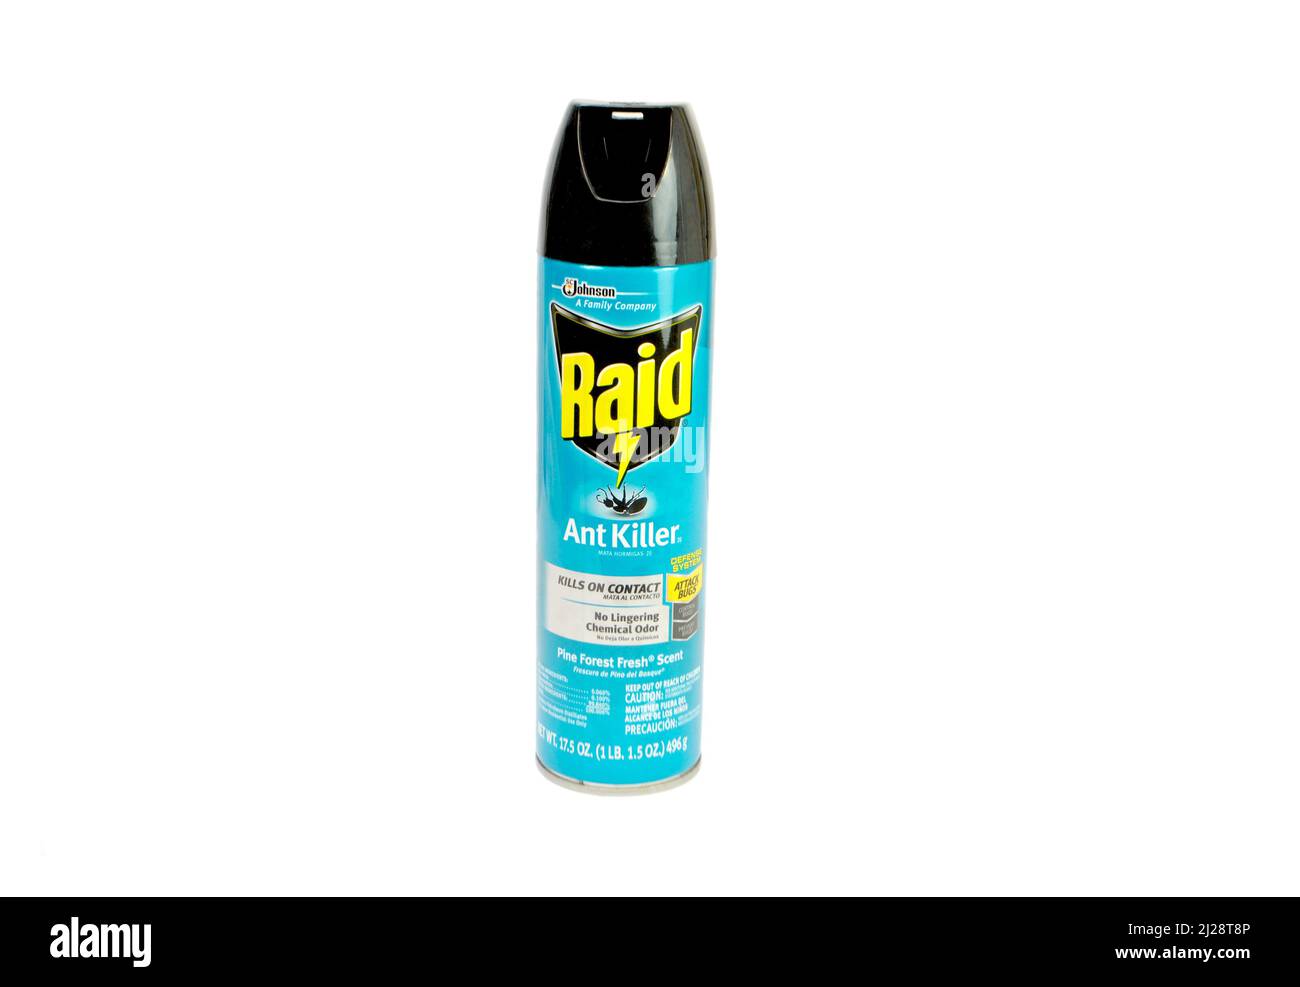 Eine Dose RAID Ant Killer isoliert über einem weißen Hintergrund Stockfoto